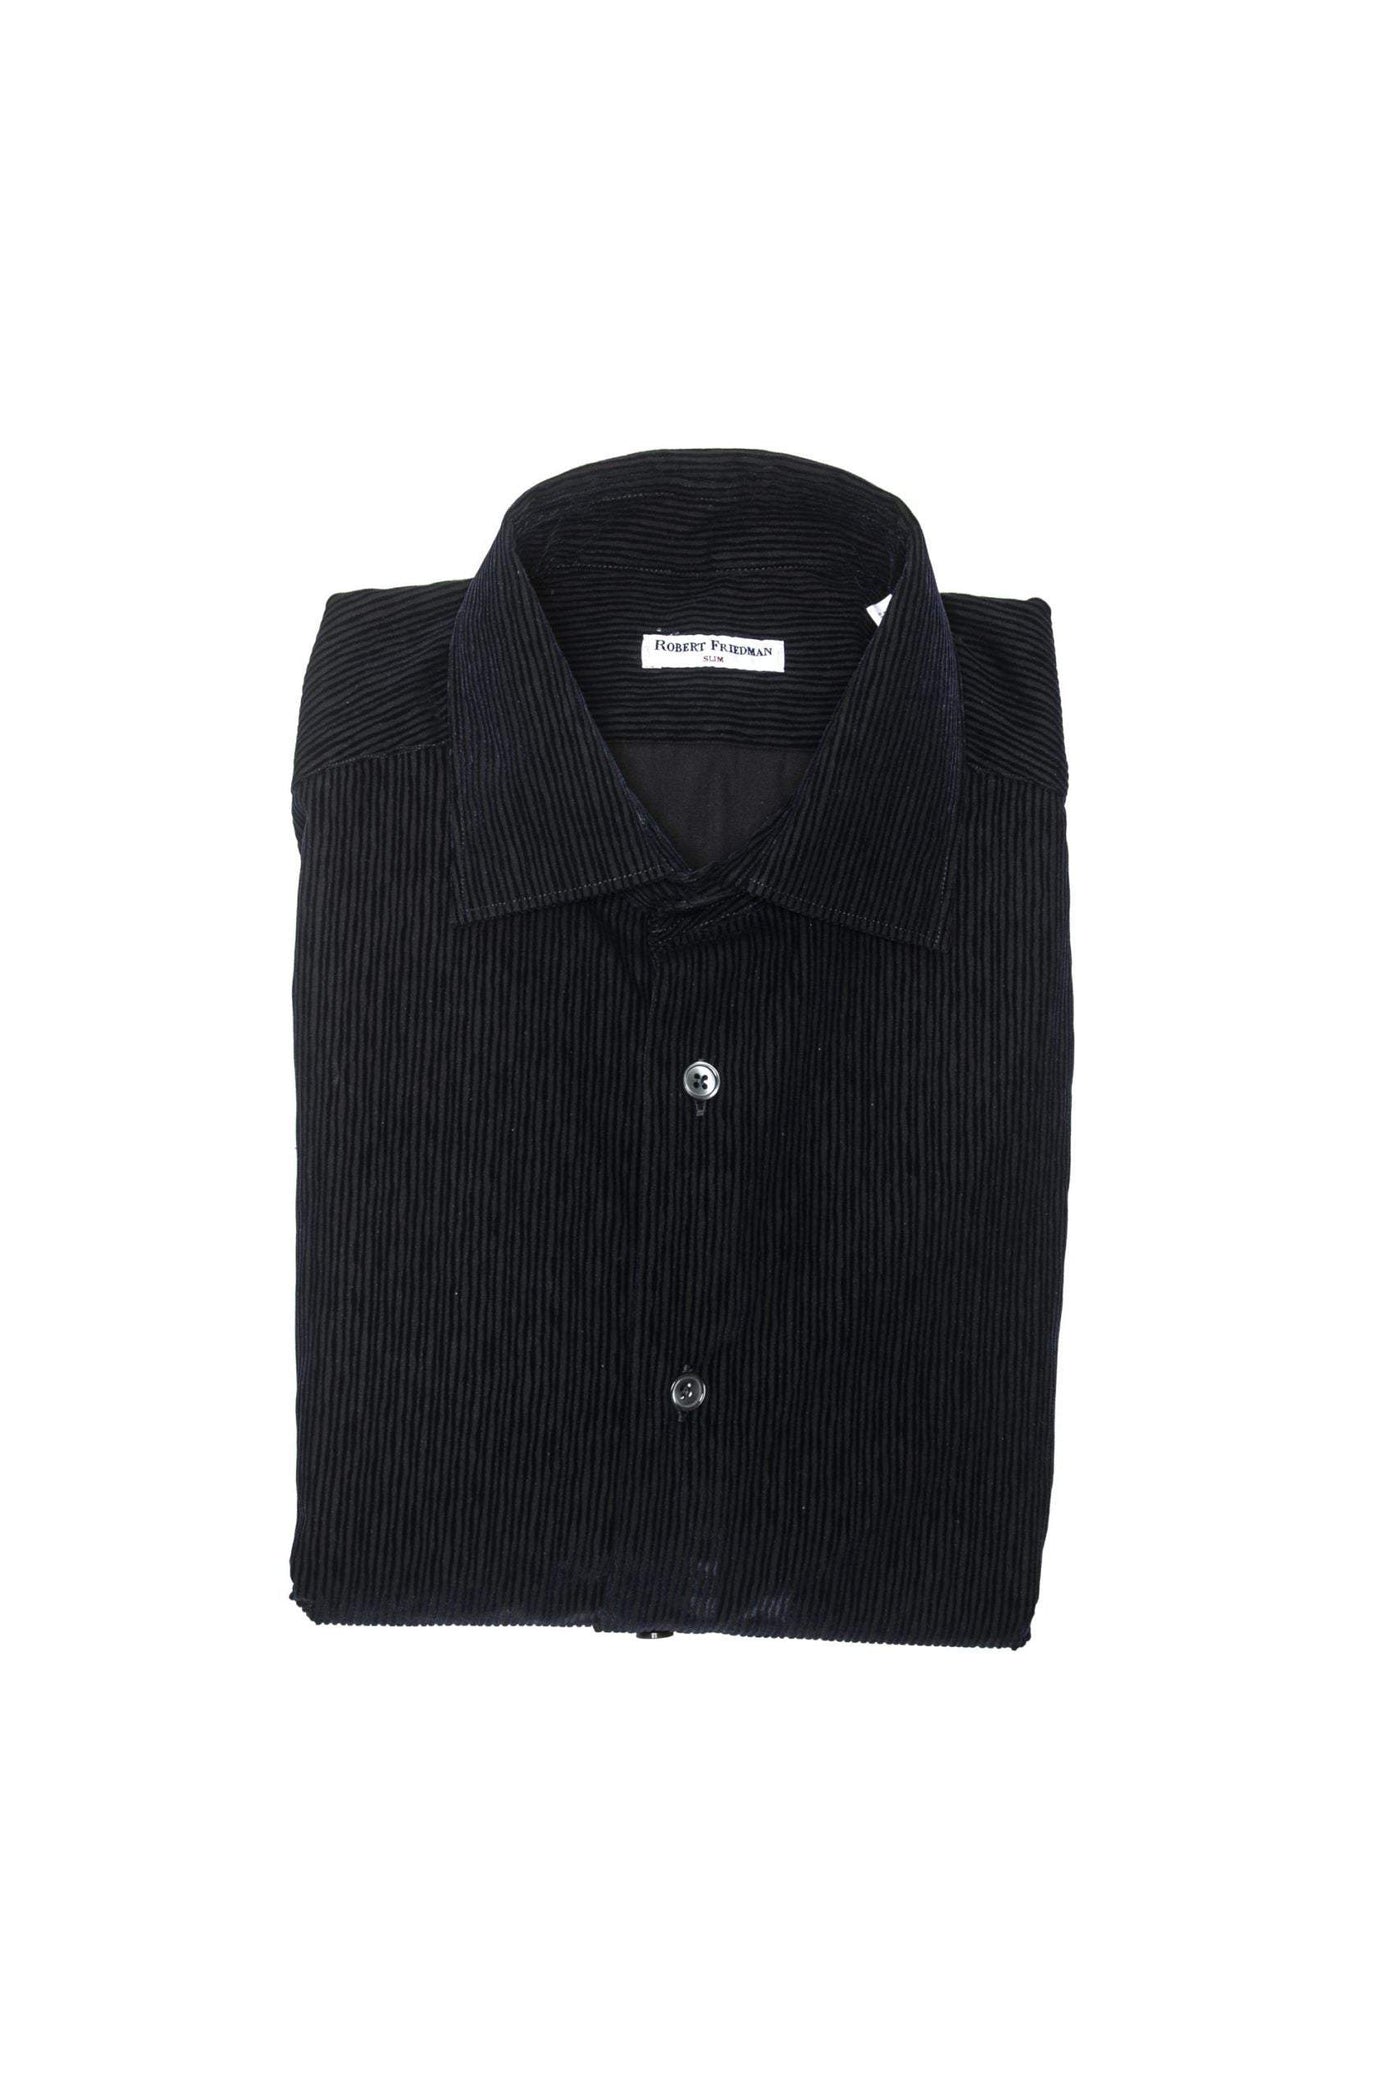 Robert Friedman Black Cotton Shirt #men, Black, feed-1, IT40 | M, Robert Friedman, Shirts - Men - Clothing at SEYMAYKA